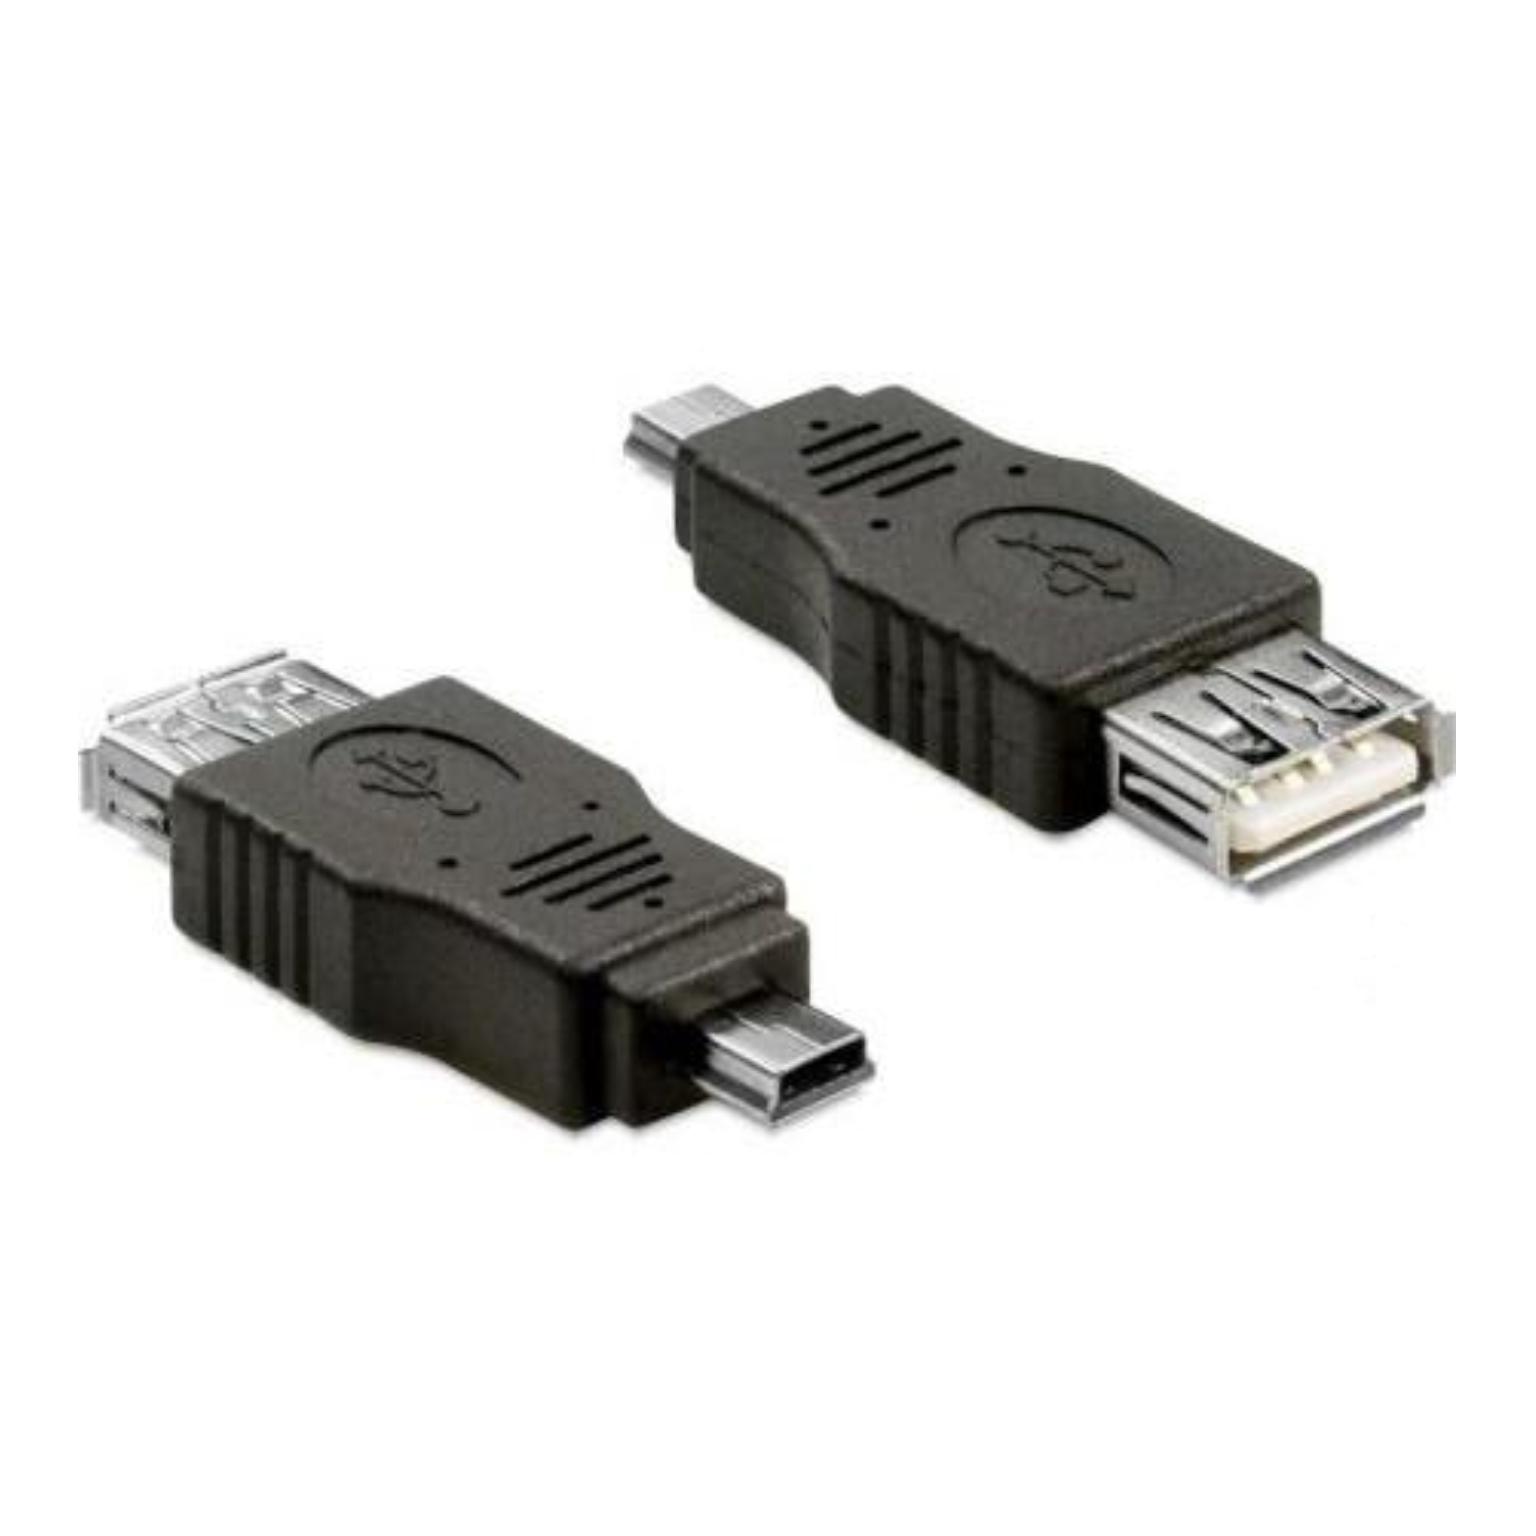 Mini USB adapter